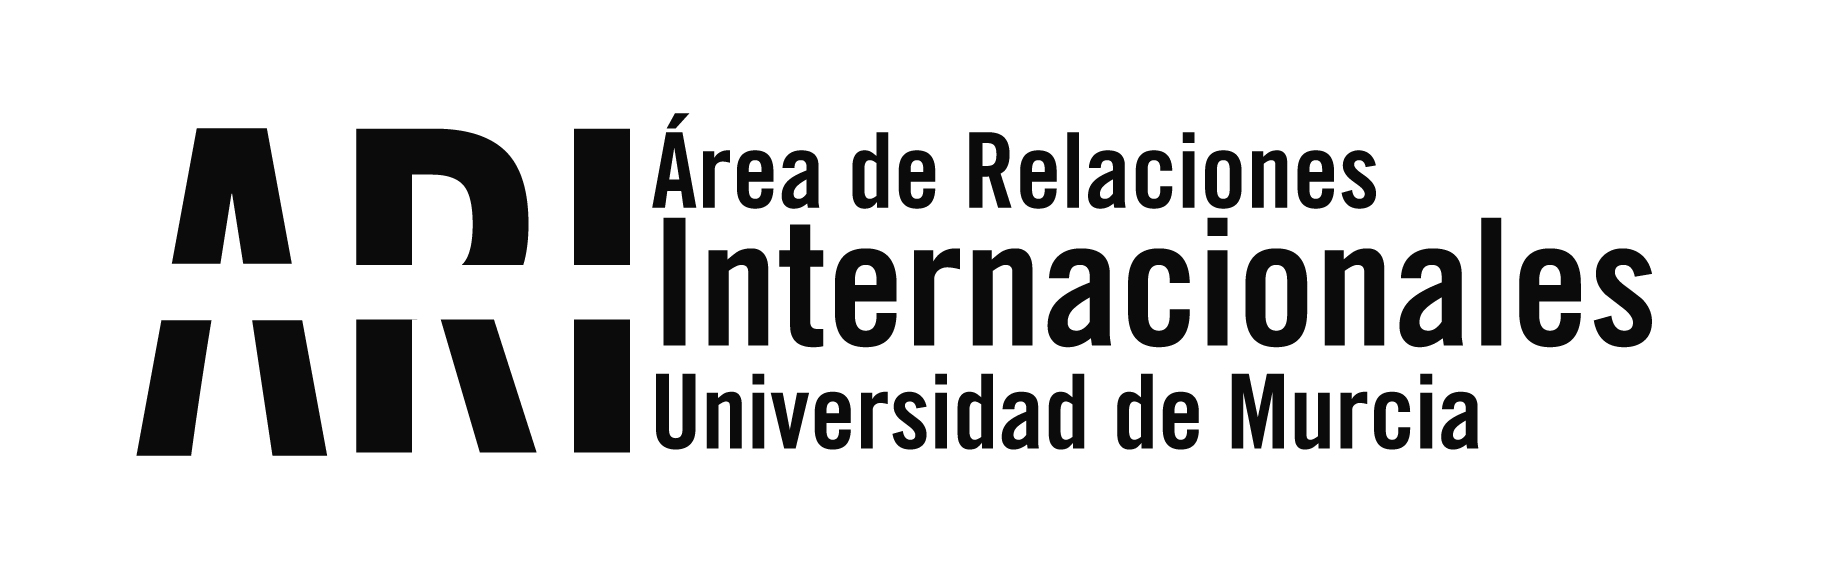 Teaching Staff / Researchers - Área de Relaciones Internacionales